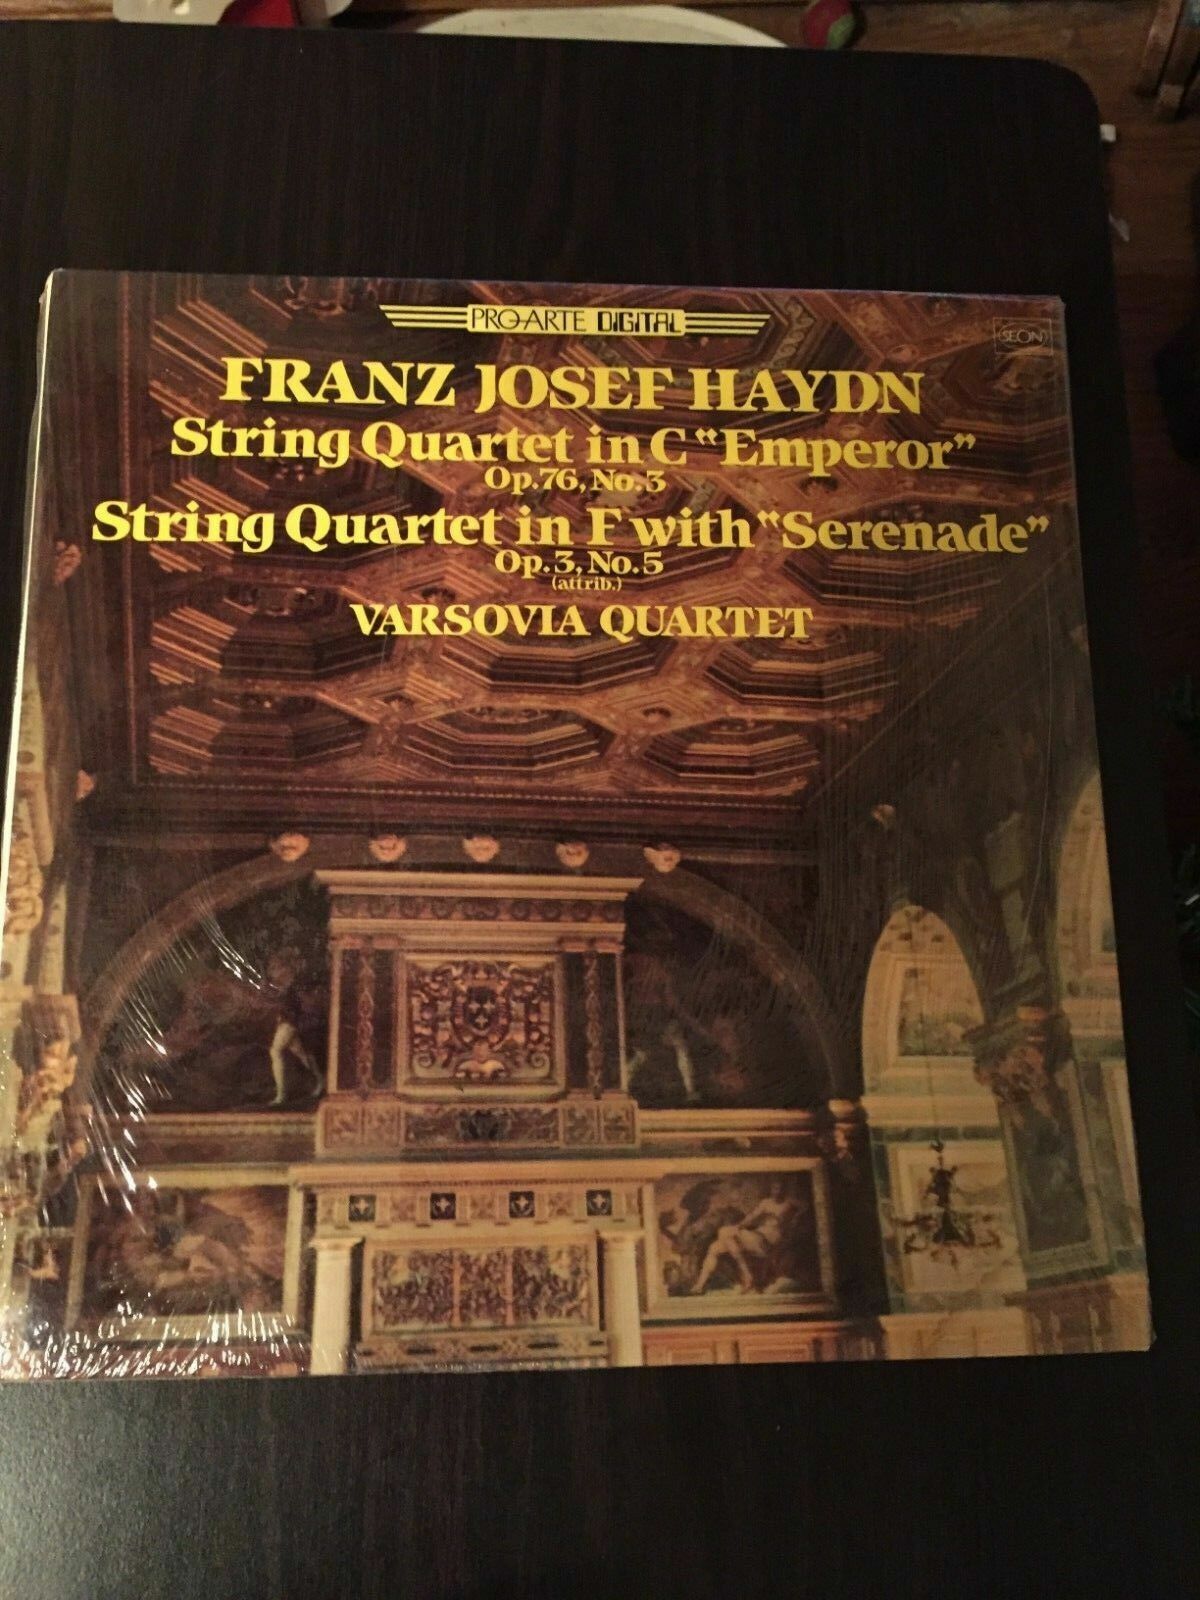 Vintage Franz Josef Haydn LP VARSOVIA QUARTET New